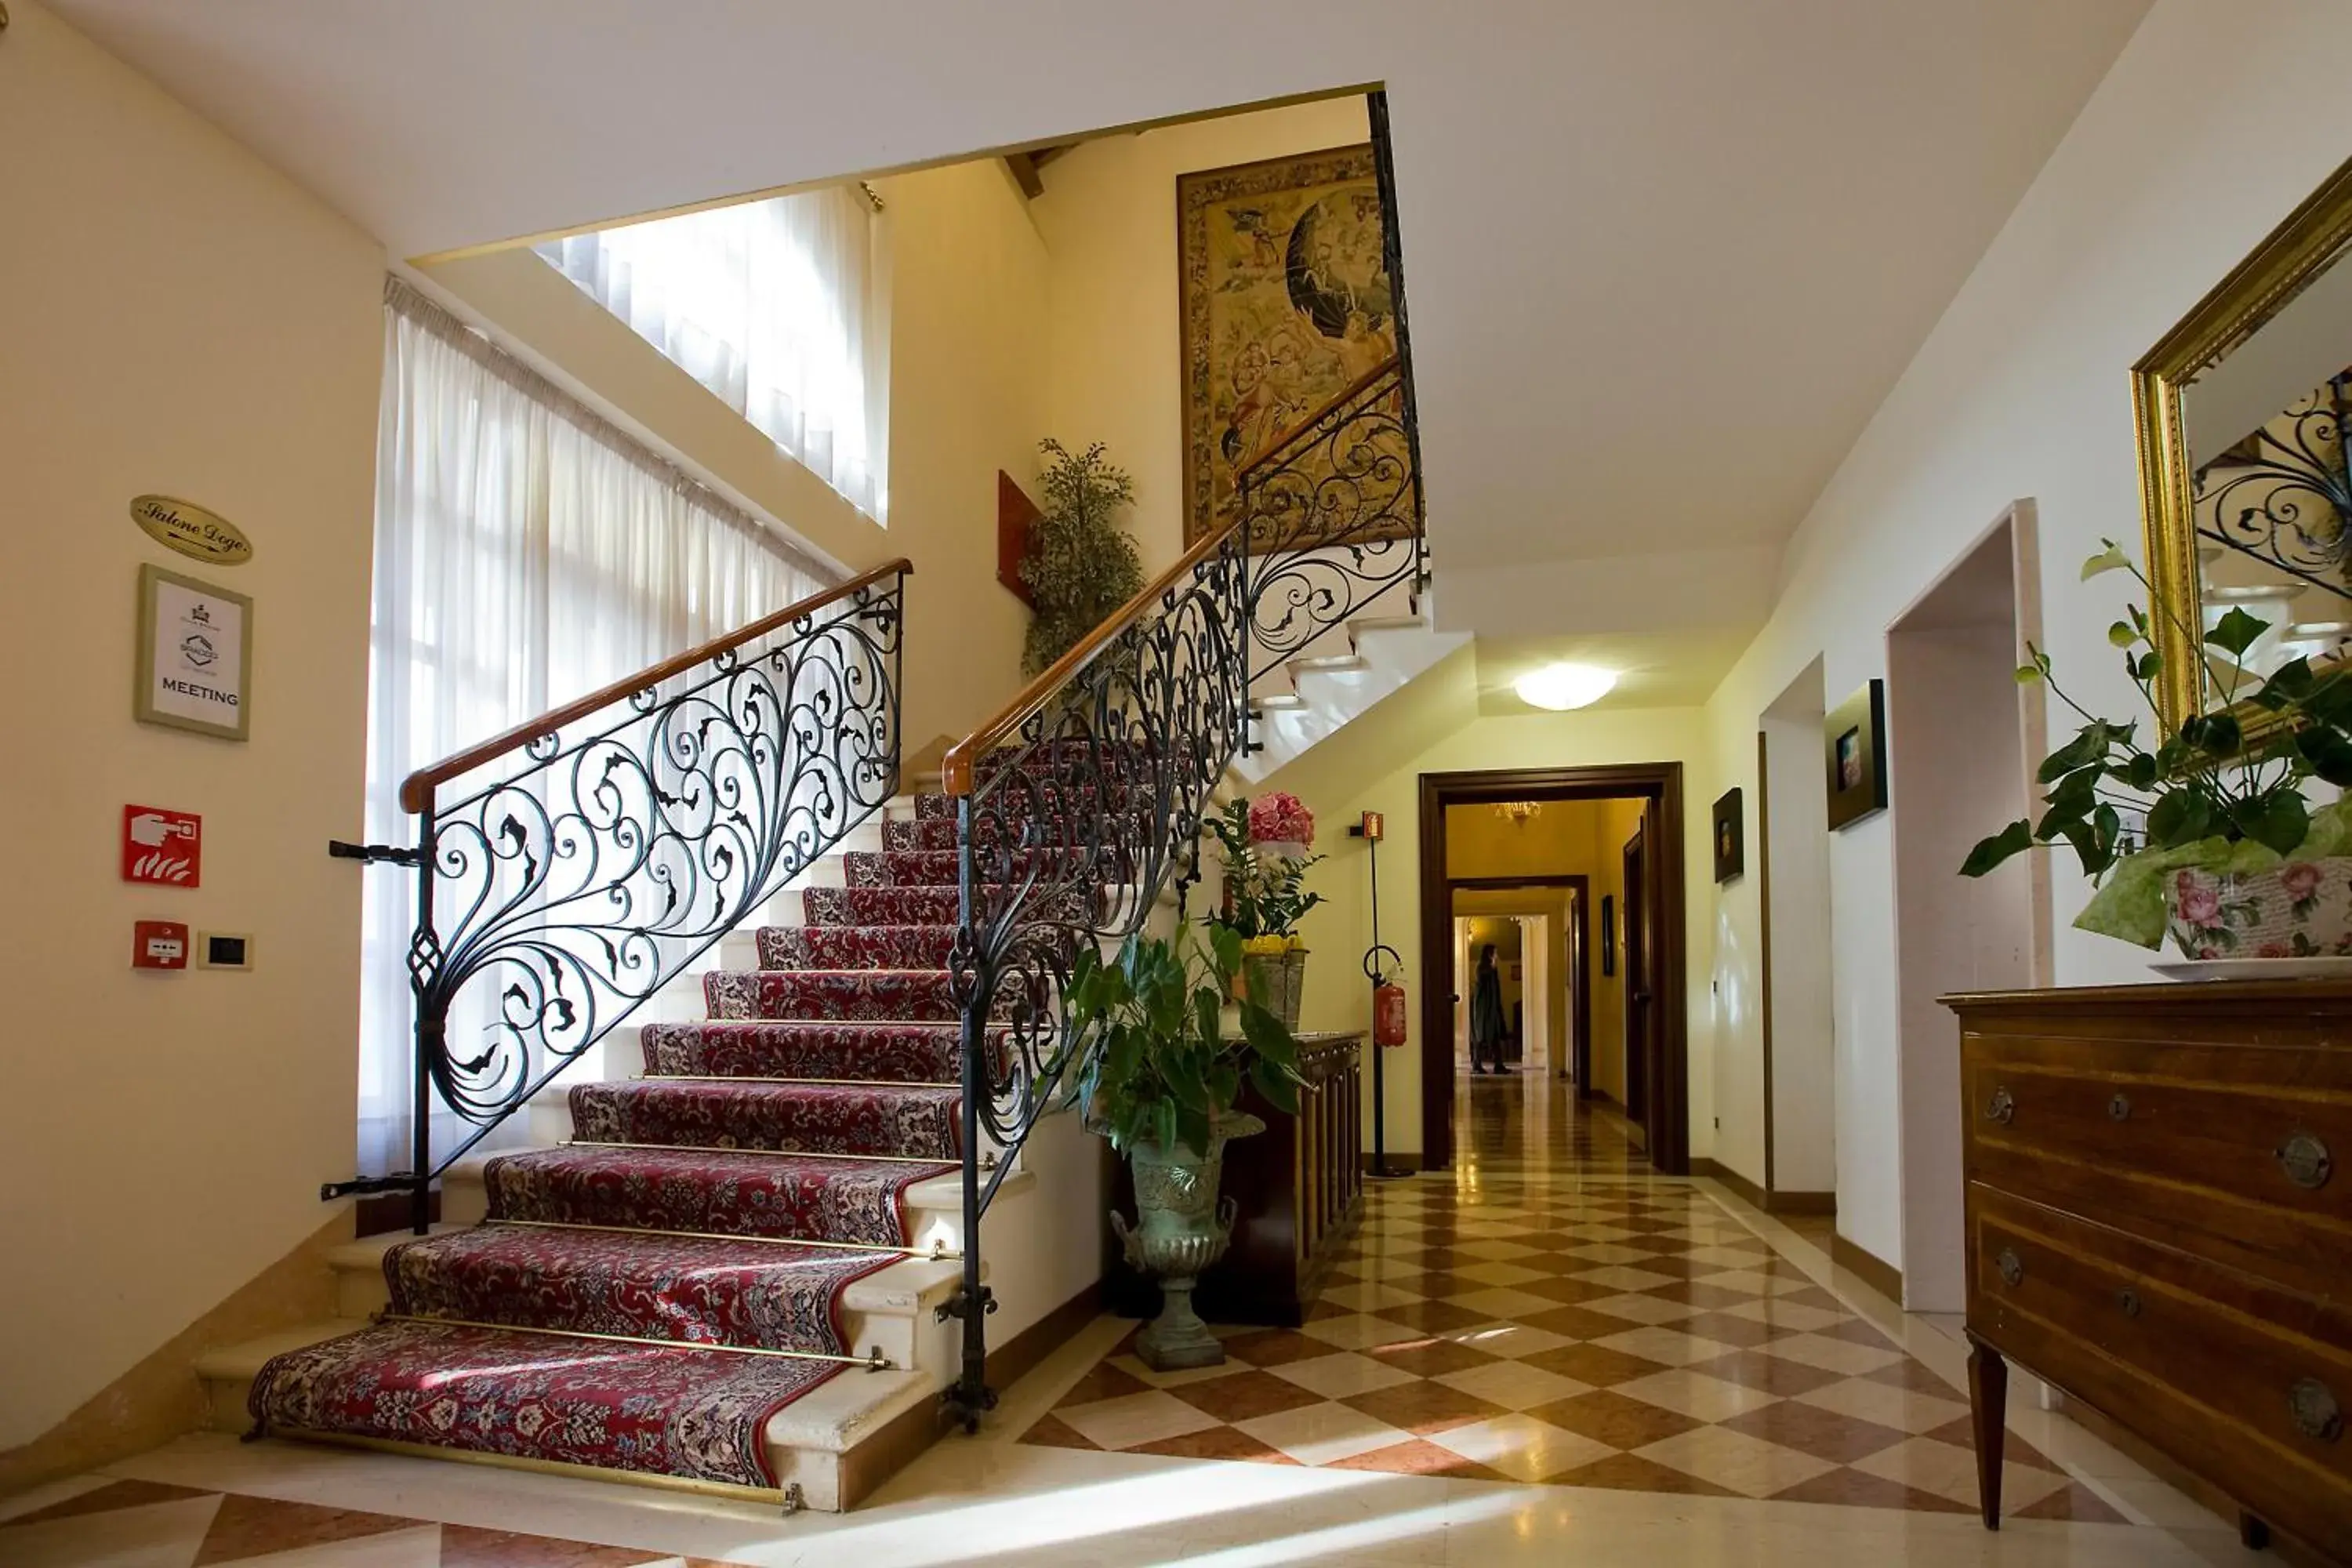 Lobby or reception, Lobby/Reception in Hotel Villa Braida